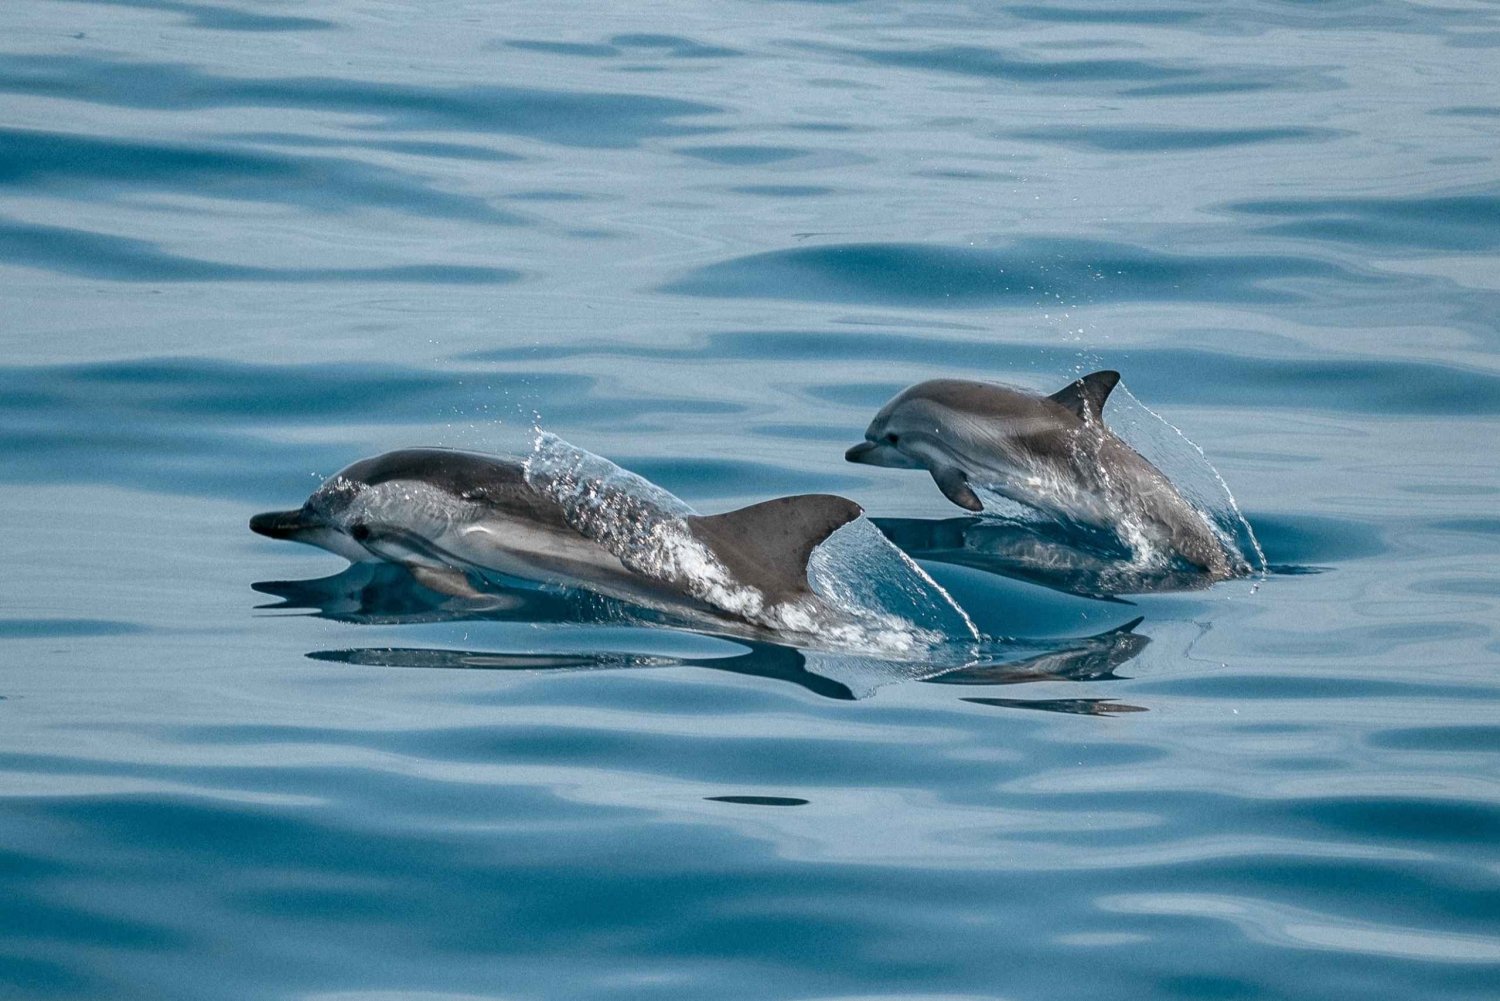 Sotogrande: Båtutflykt med delfinskådning och dryck